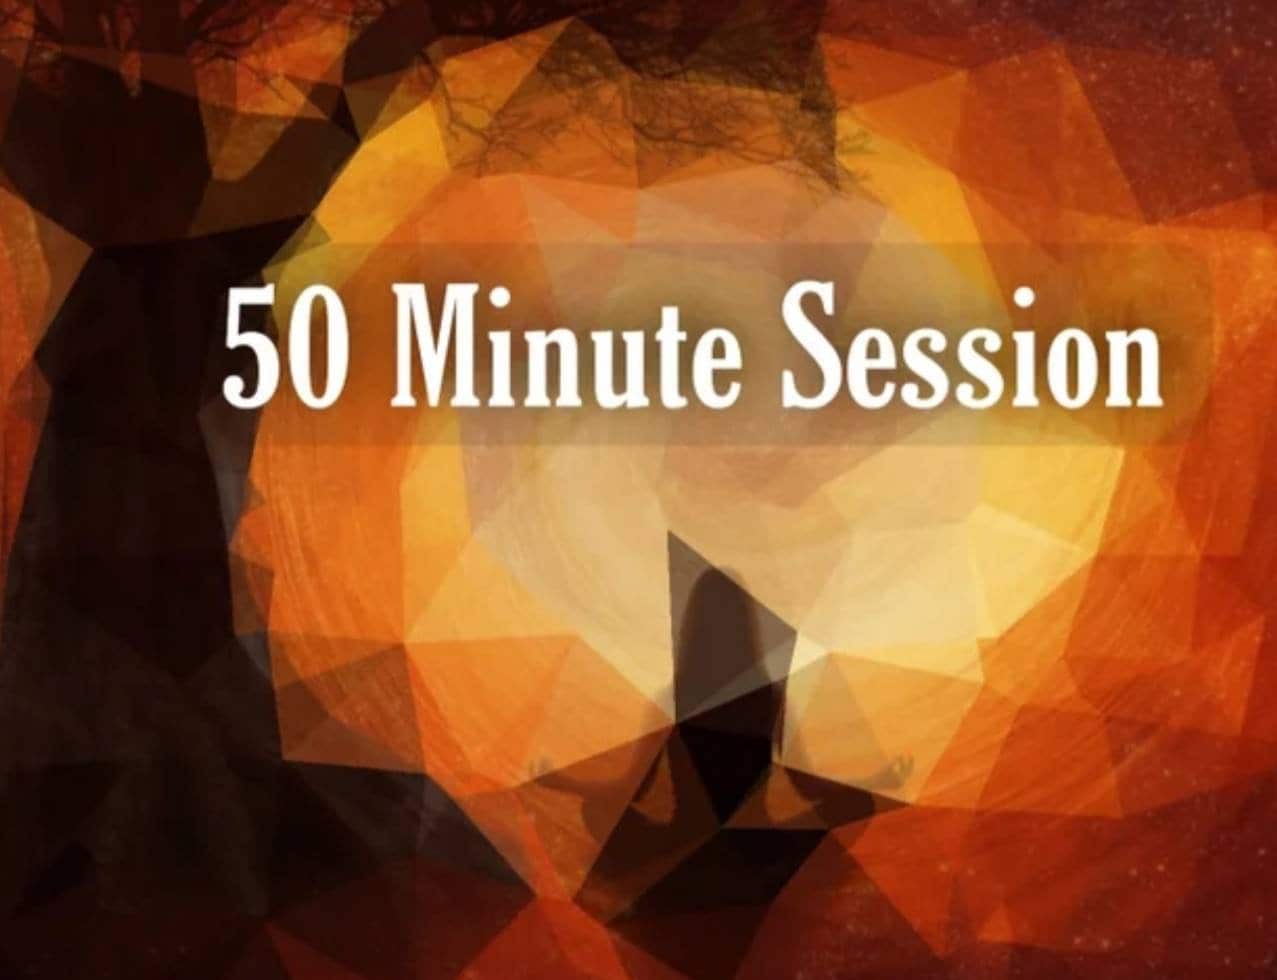 lecture de tarot canalisée par session 50 minutes | enregistrement vidéo